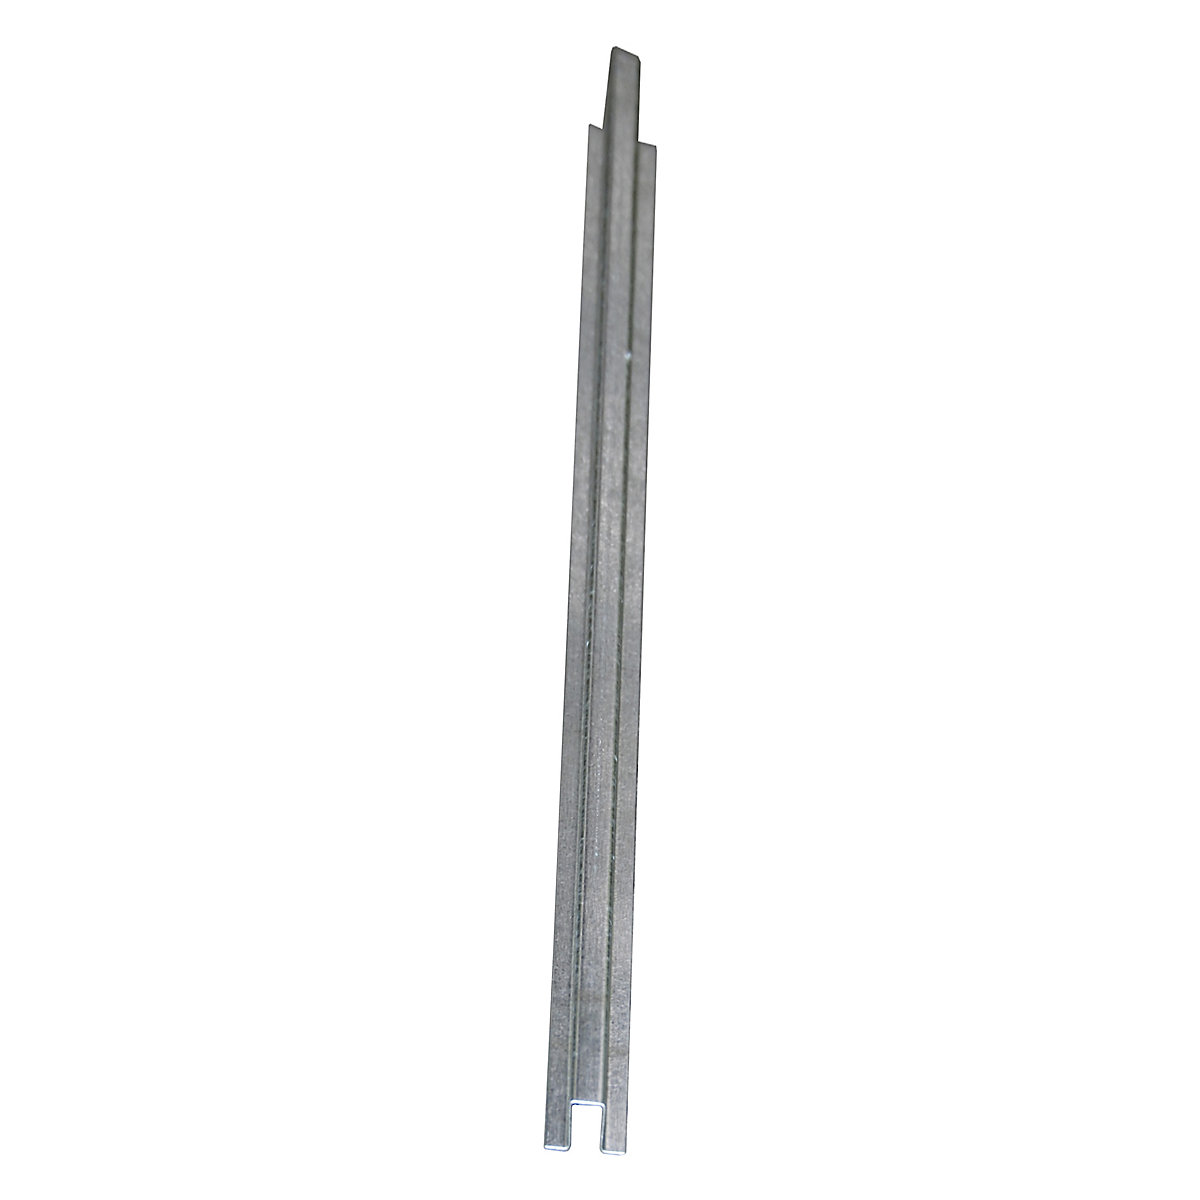 EUROKRAFTpro – Łącznik wannowy do niskiej wanny płaskiej ze stali, szer. 55 mm, ocynkowane, dł. 2850 mm